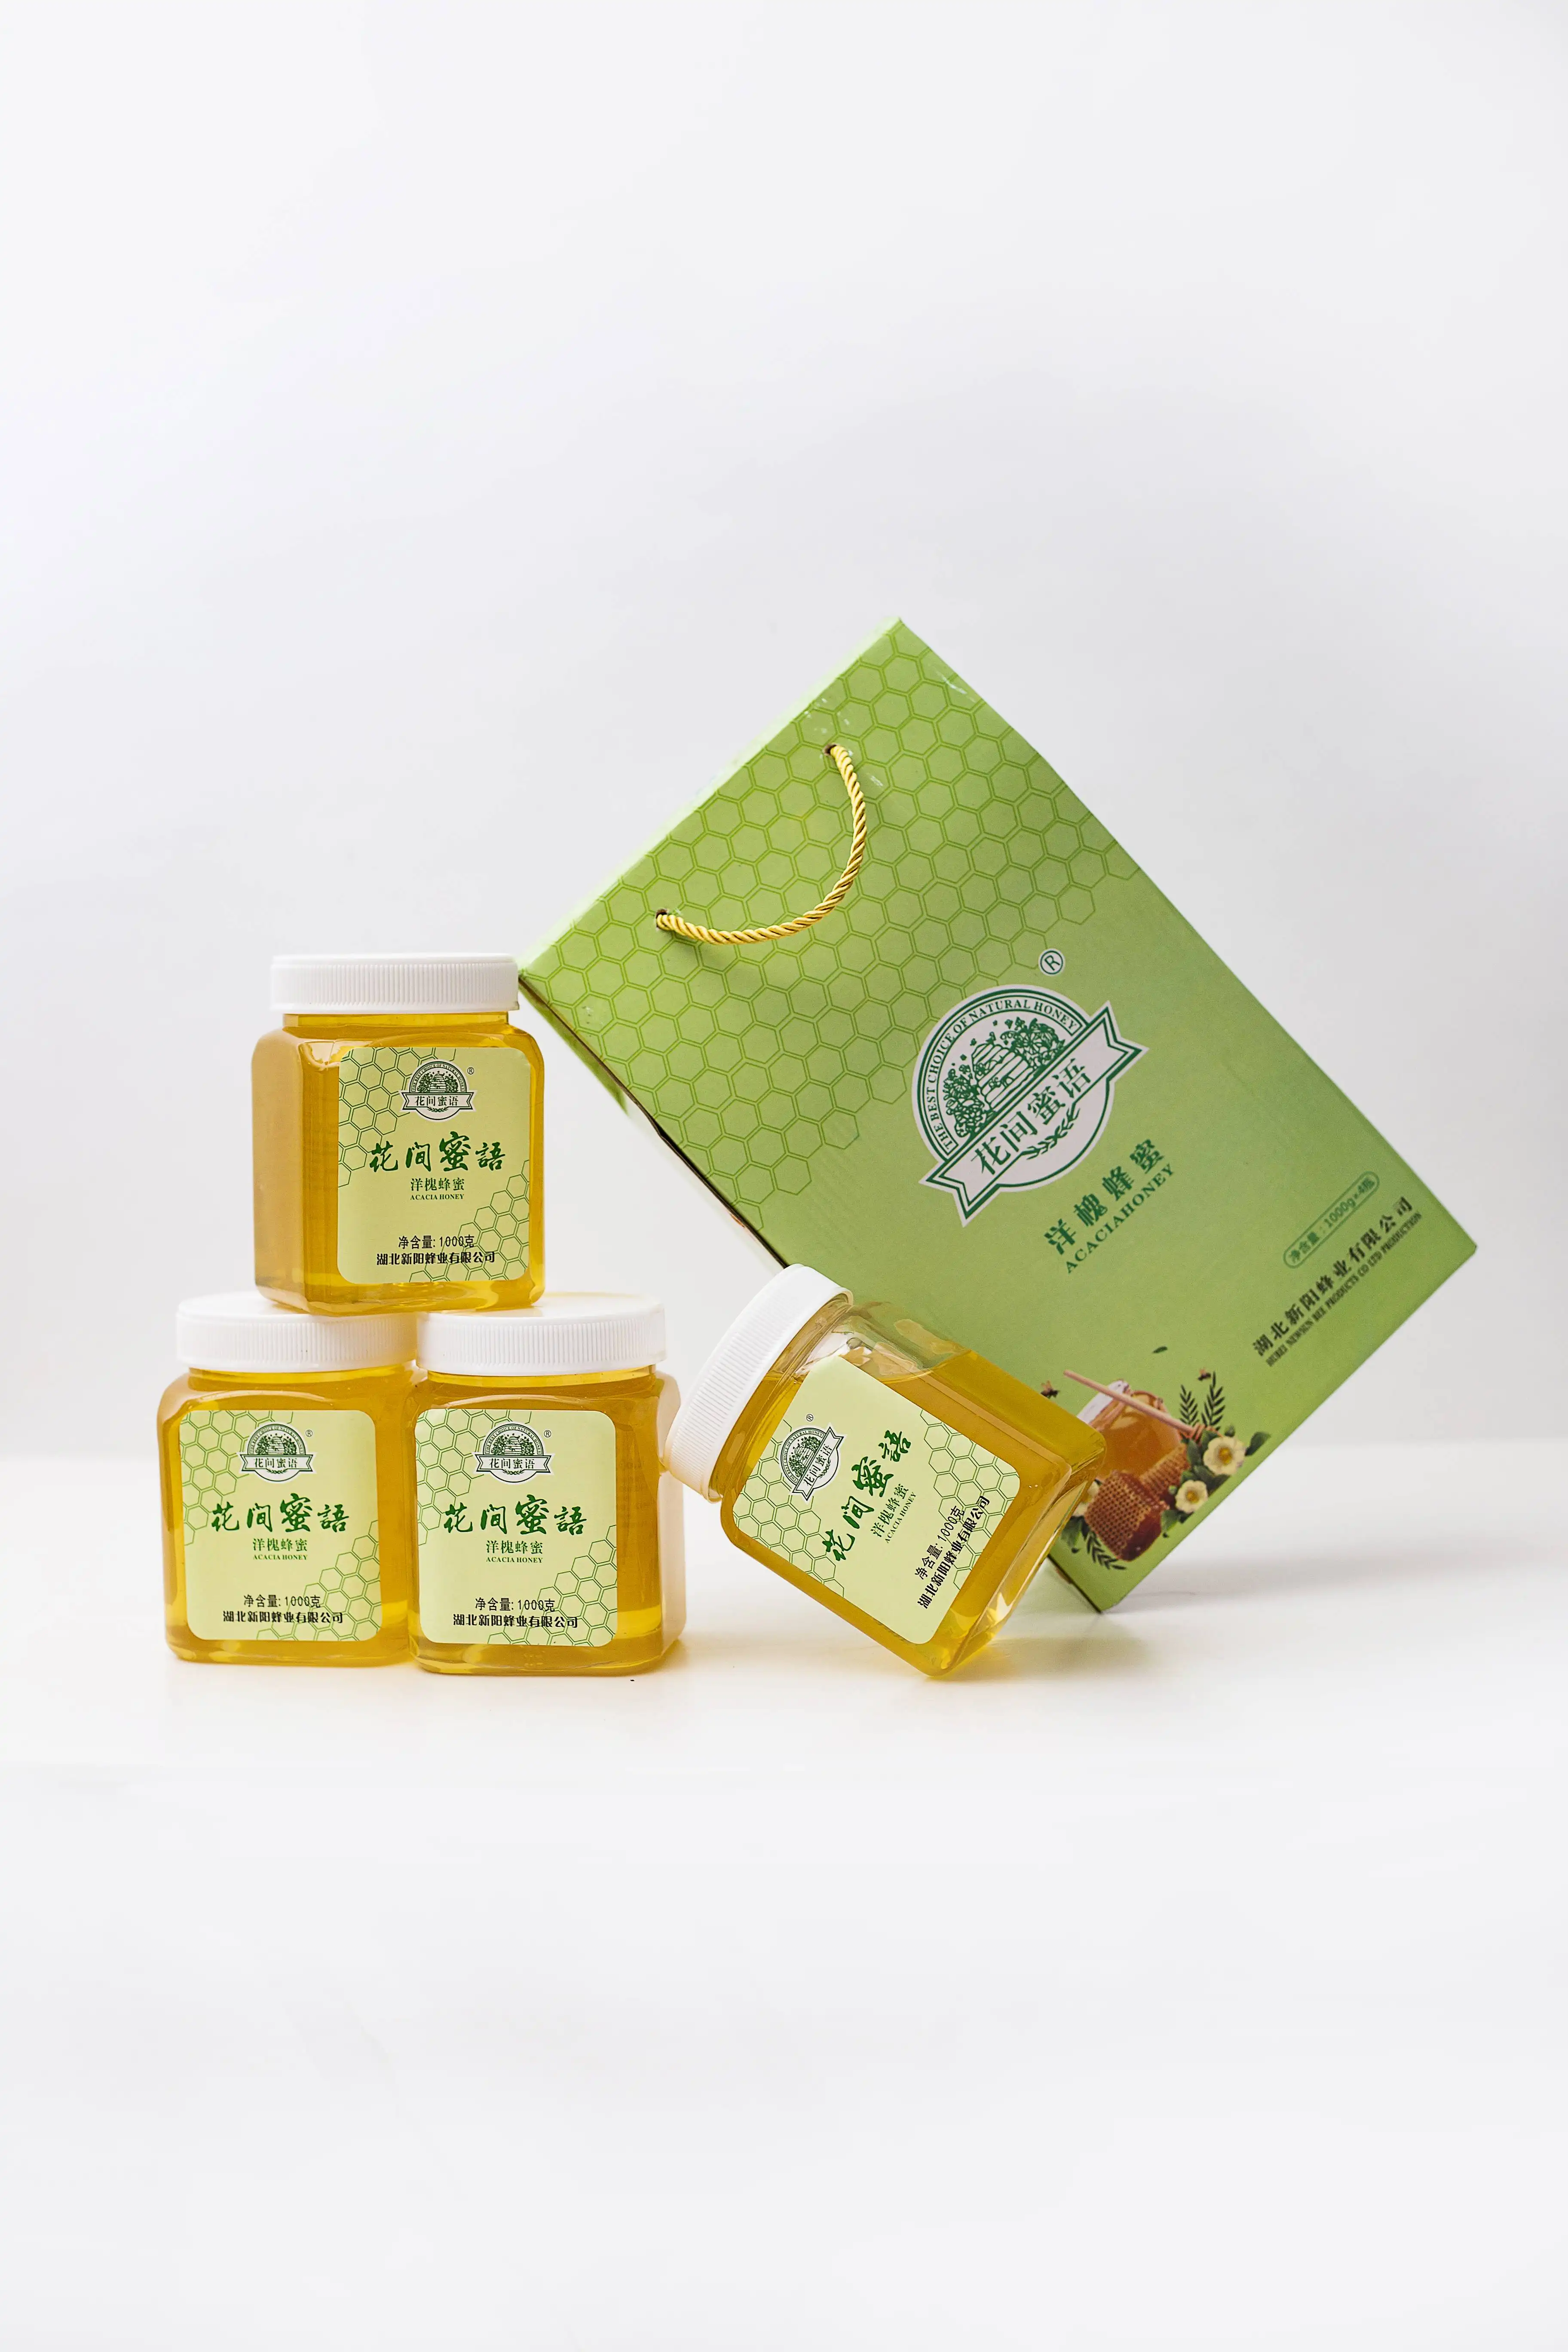 ボトルまたはドラムの健康食品に詰められた菜種とアカシアの白色の100% 中国の純粋な天然蜂蜜のサンプル